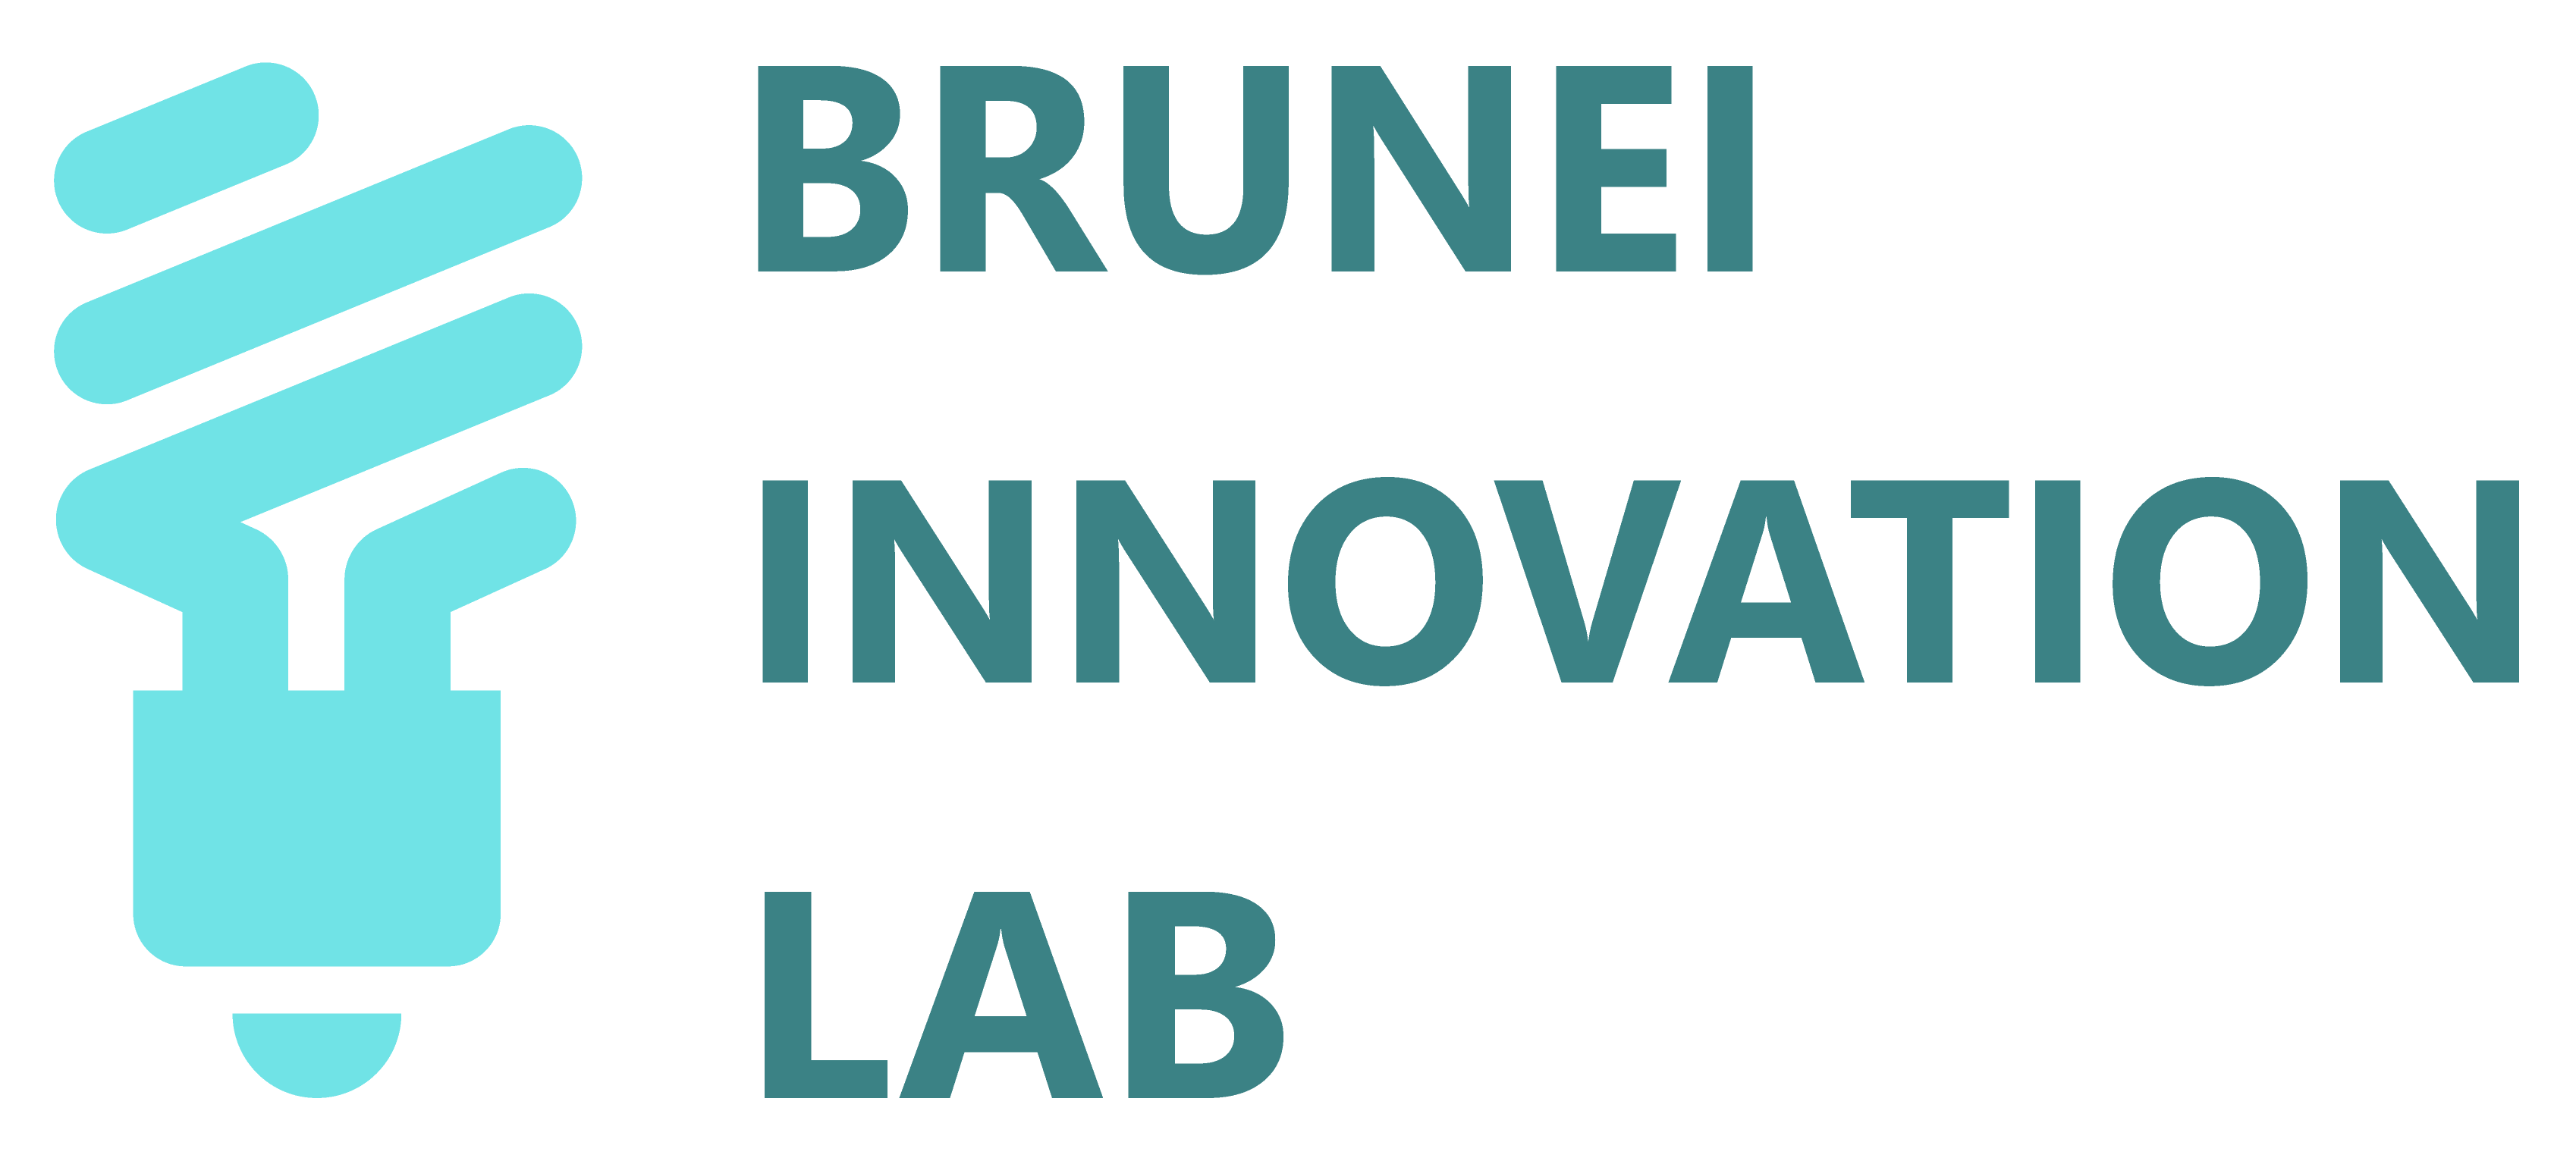 Brunei innovation lab